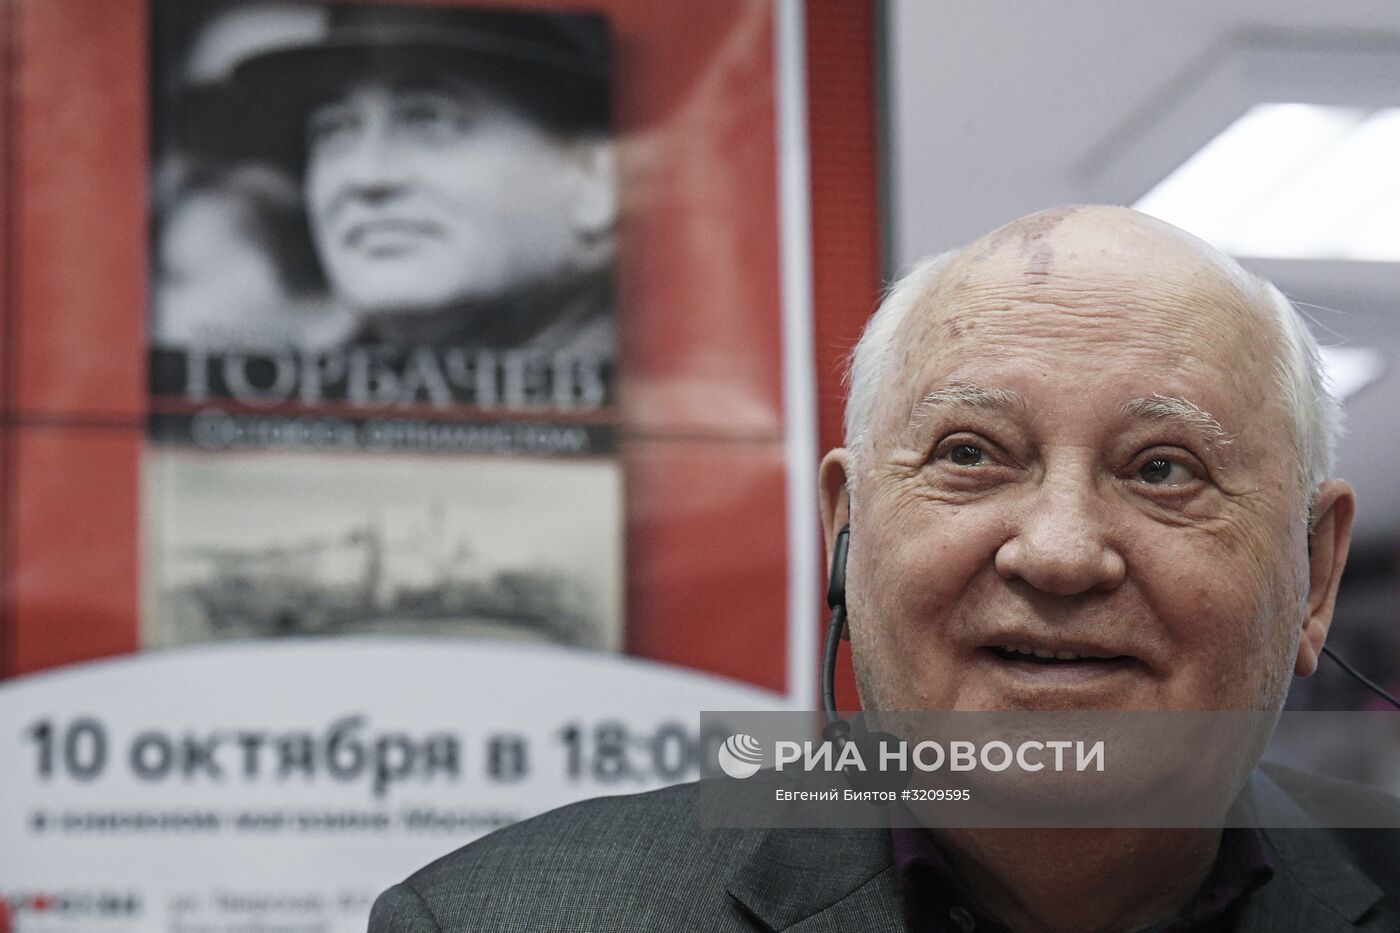 Презентация книги Михаила Горбачева "Остаюсь оптимистом"